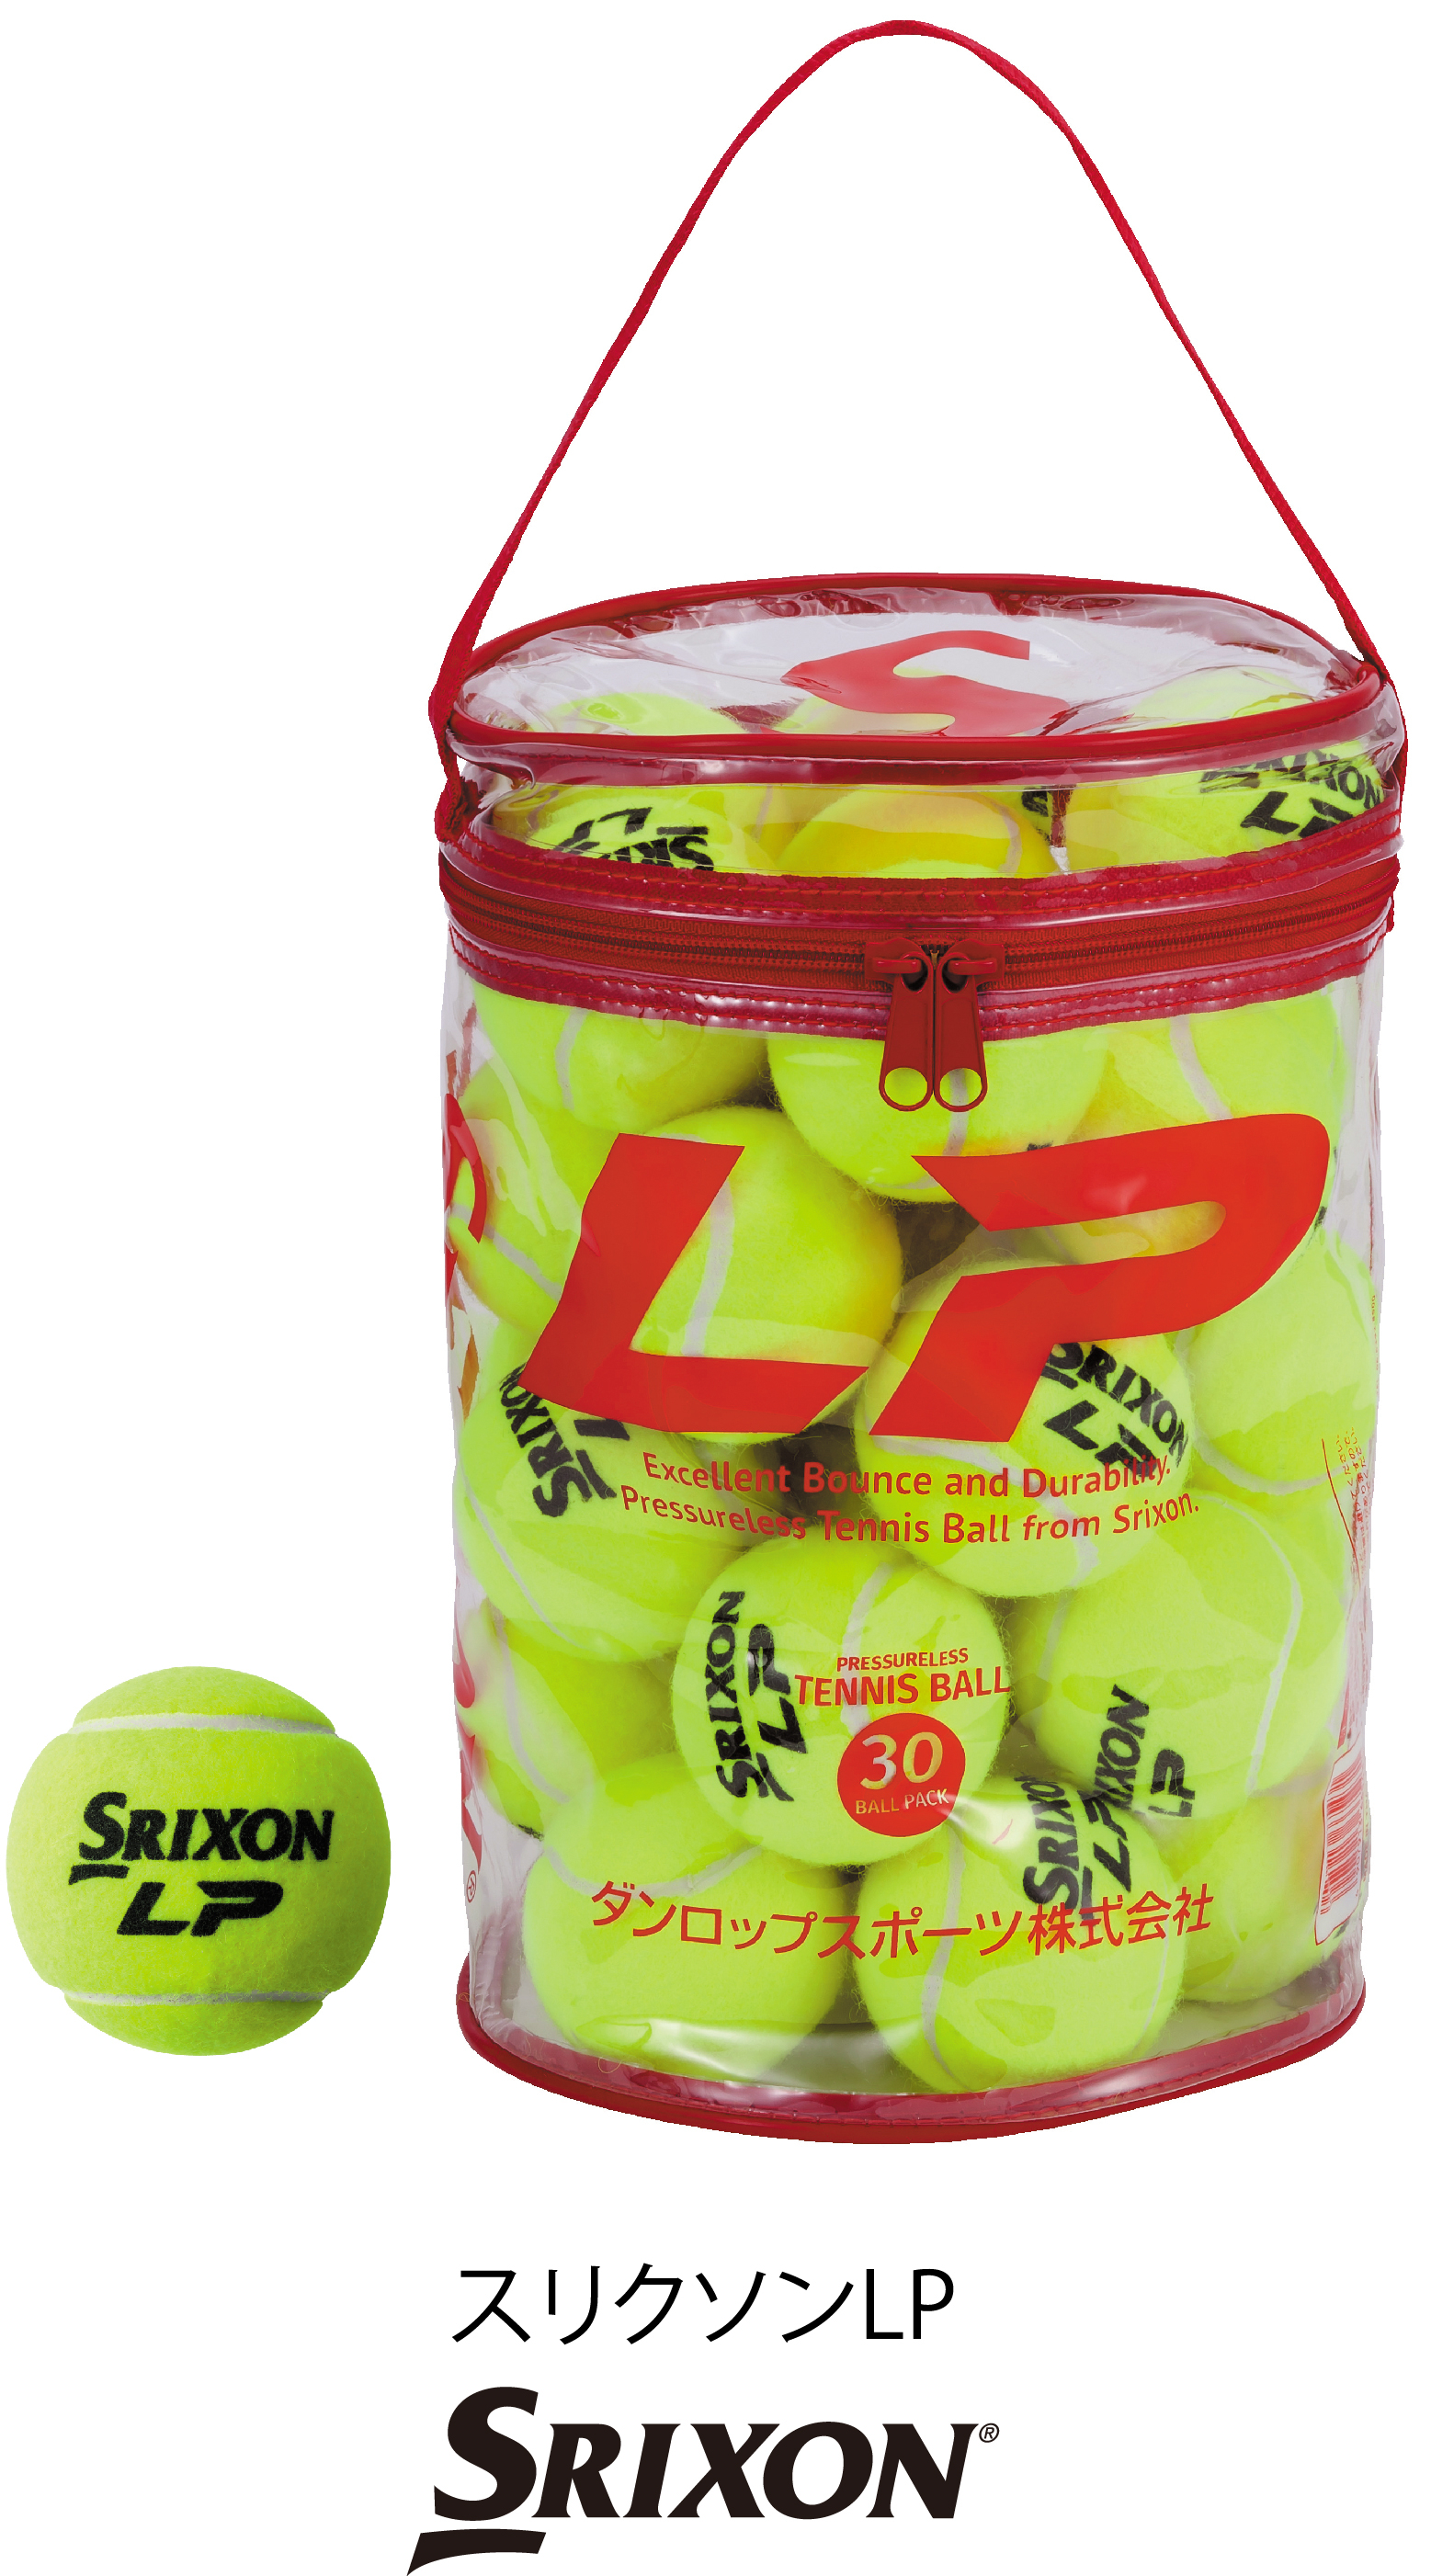 プレッシャーレステニスボール Srixon Lp を新発売 ダンロップスポーツ株式会社のプレスリリース